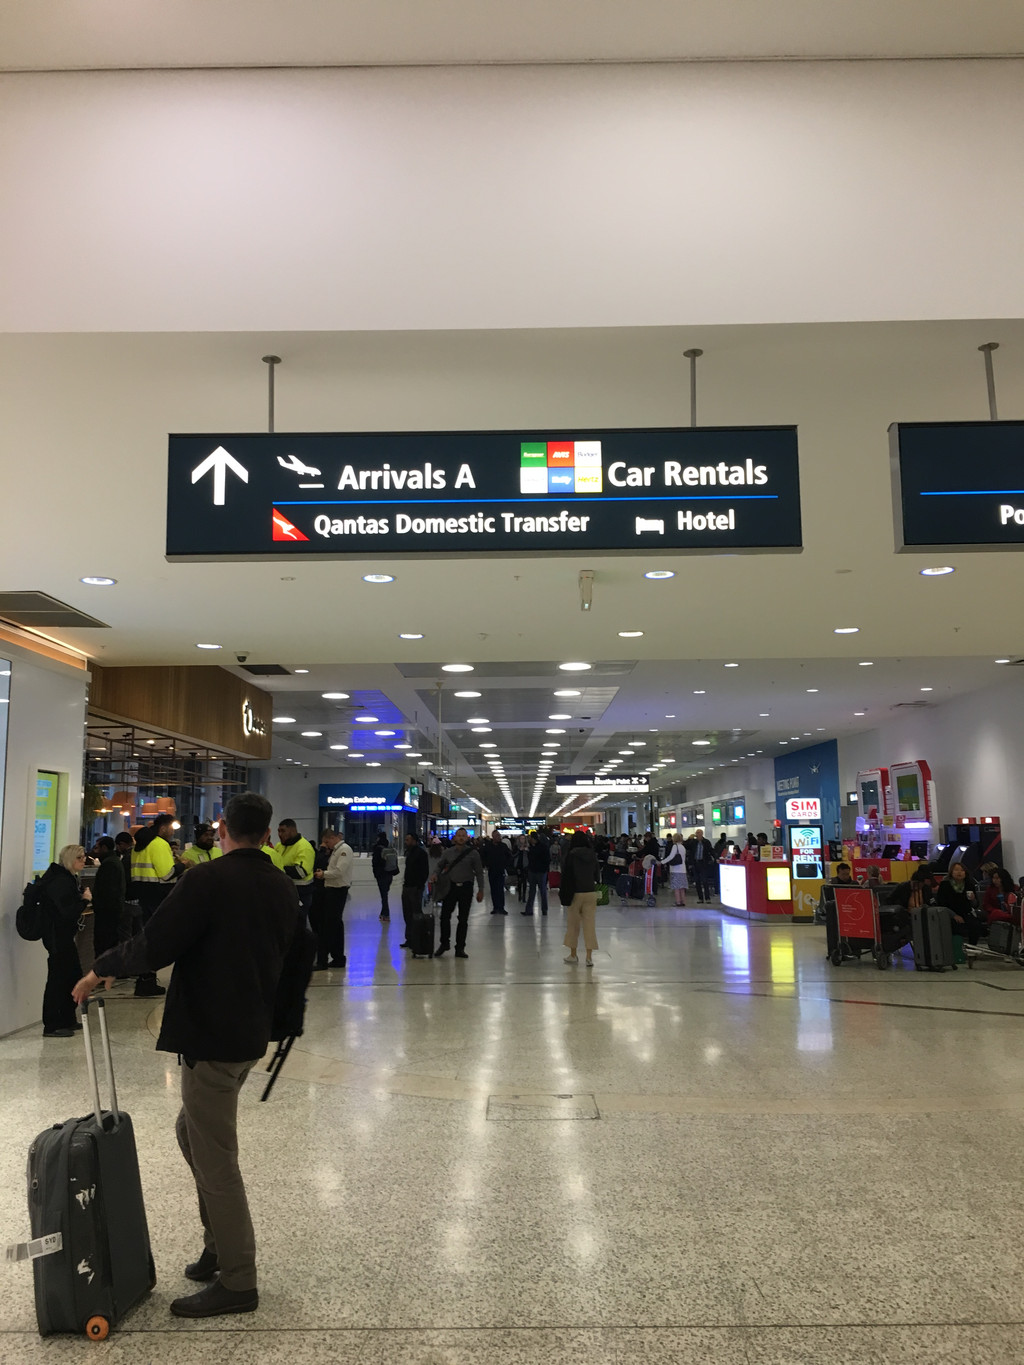 当我着陆悉尼机场,马上就要坐飞机到霍巴特,国内到悉尼一般是t1航站楼